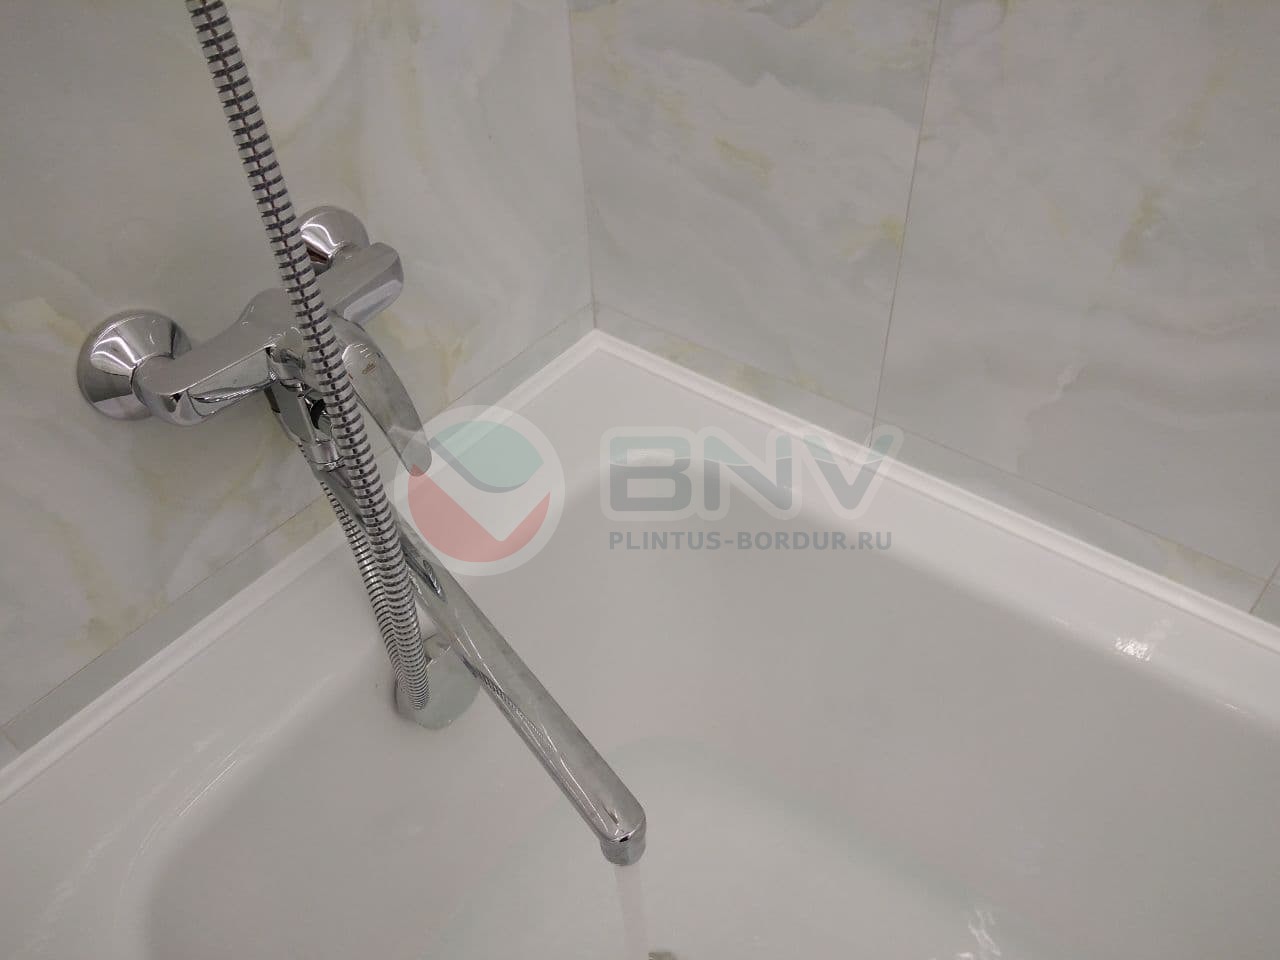 Комплект акриловых бордюров для ванной ГЛ12 интернет-магазин BNV